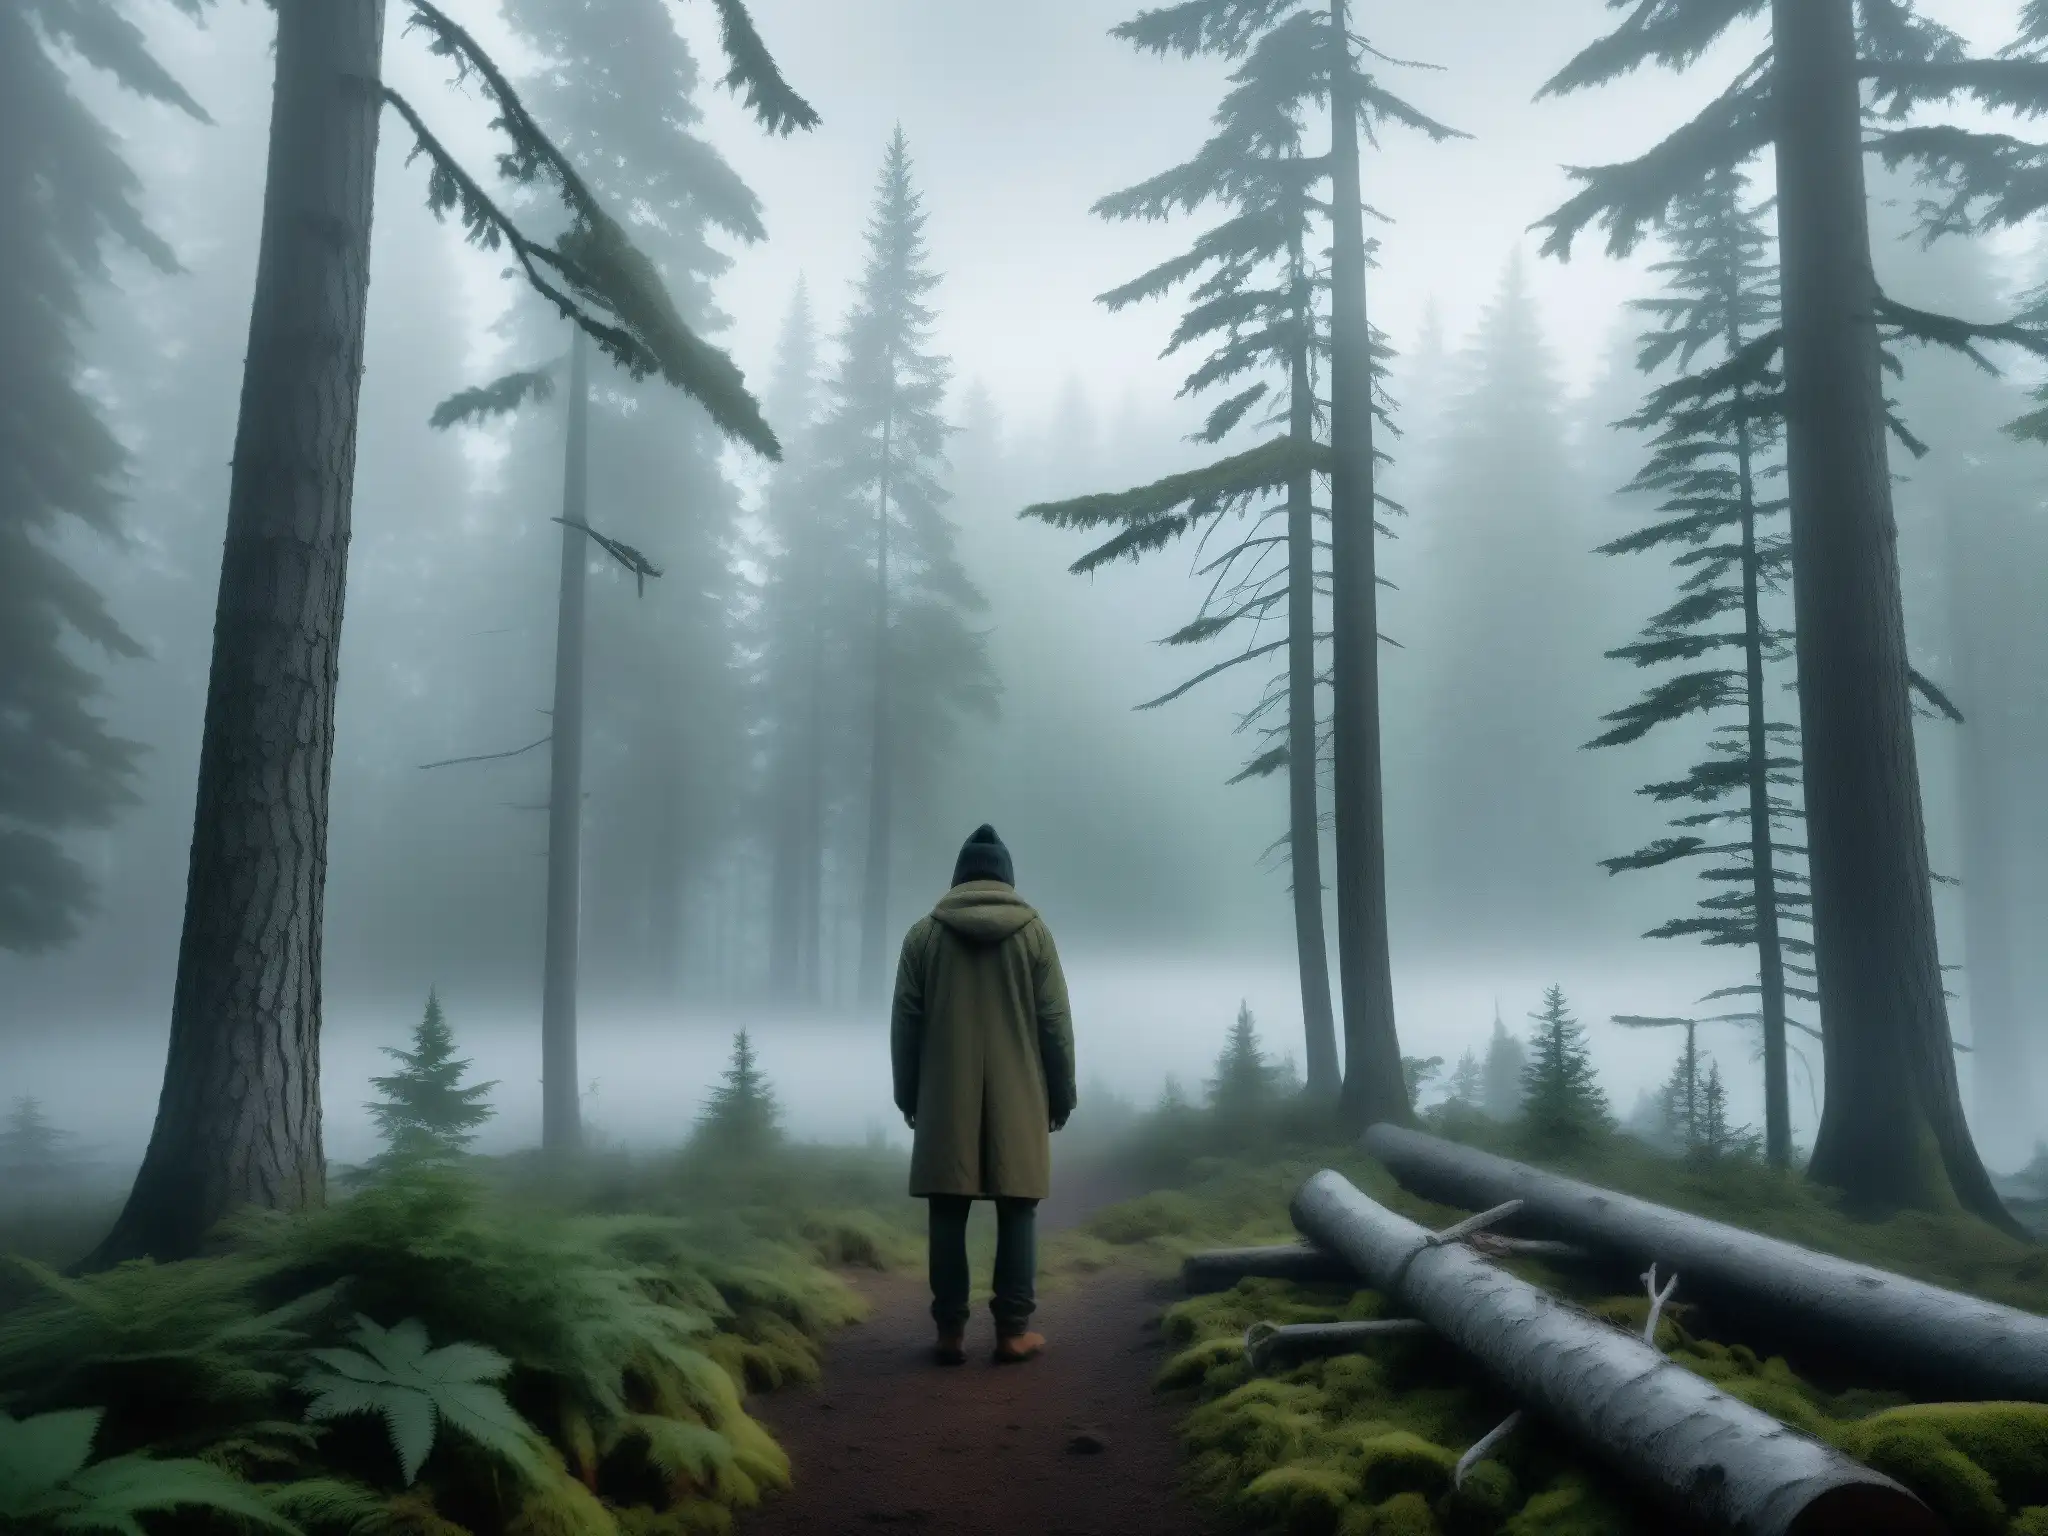 Misterio del Wendigo en Canadá: Un bosque neblinoso y silencioso, con árboles densos y nieve en el suelo